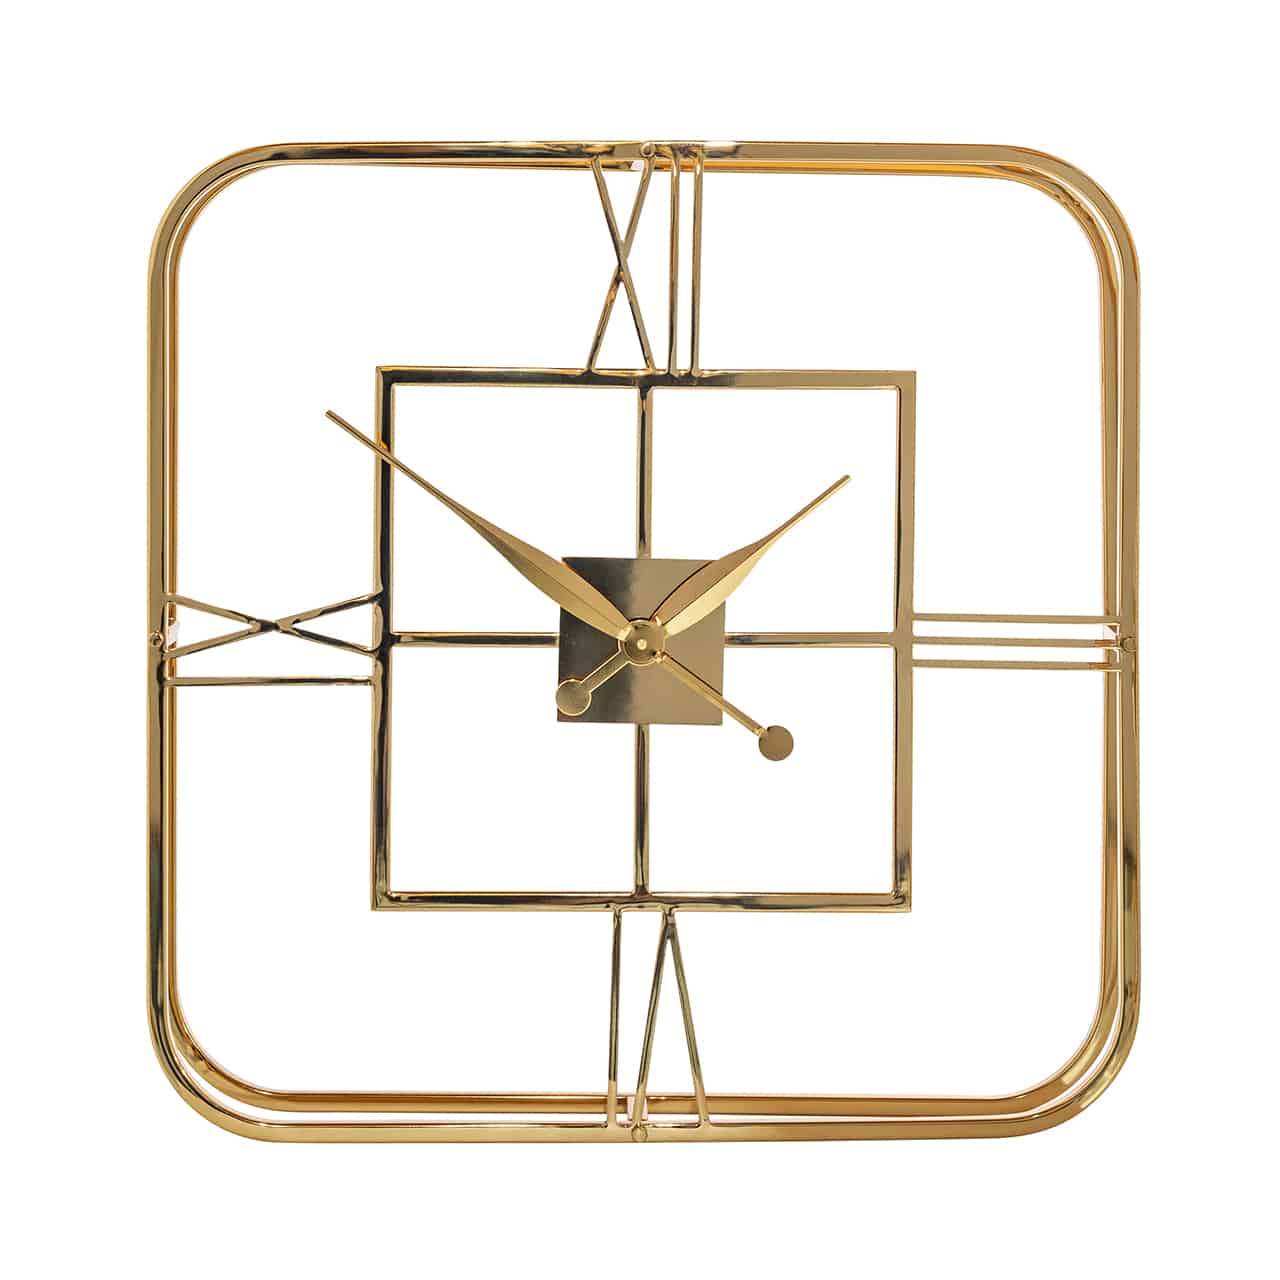 Filigrane, goldene Wanduhr, quadratischer Rahmen mit abgerundeten Ecken; in dem die Ziffern III-IV-IX und XII angebracht sind; mittig, befestigt auf einer kleinen quadratischen Platte, die spitz zulaufenden Uhrzeiger.